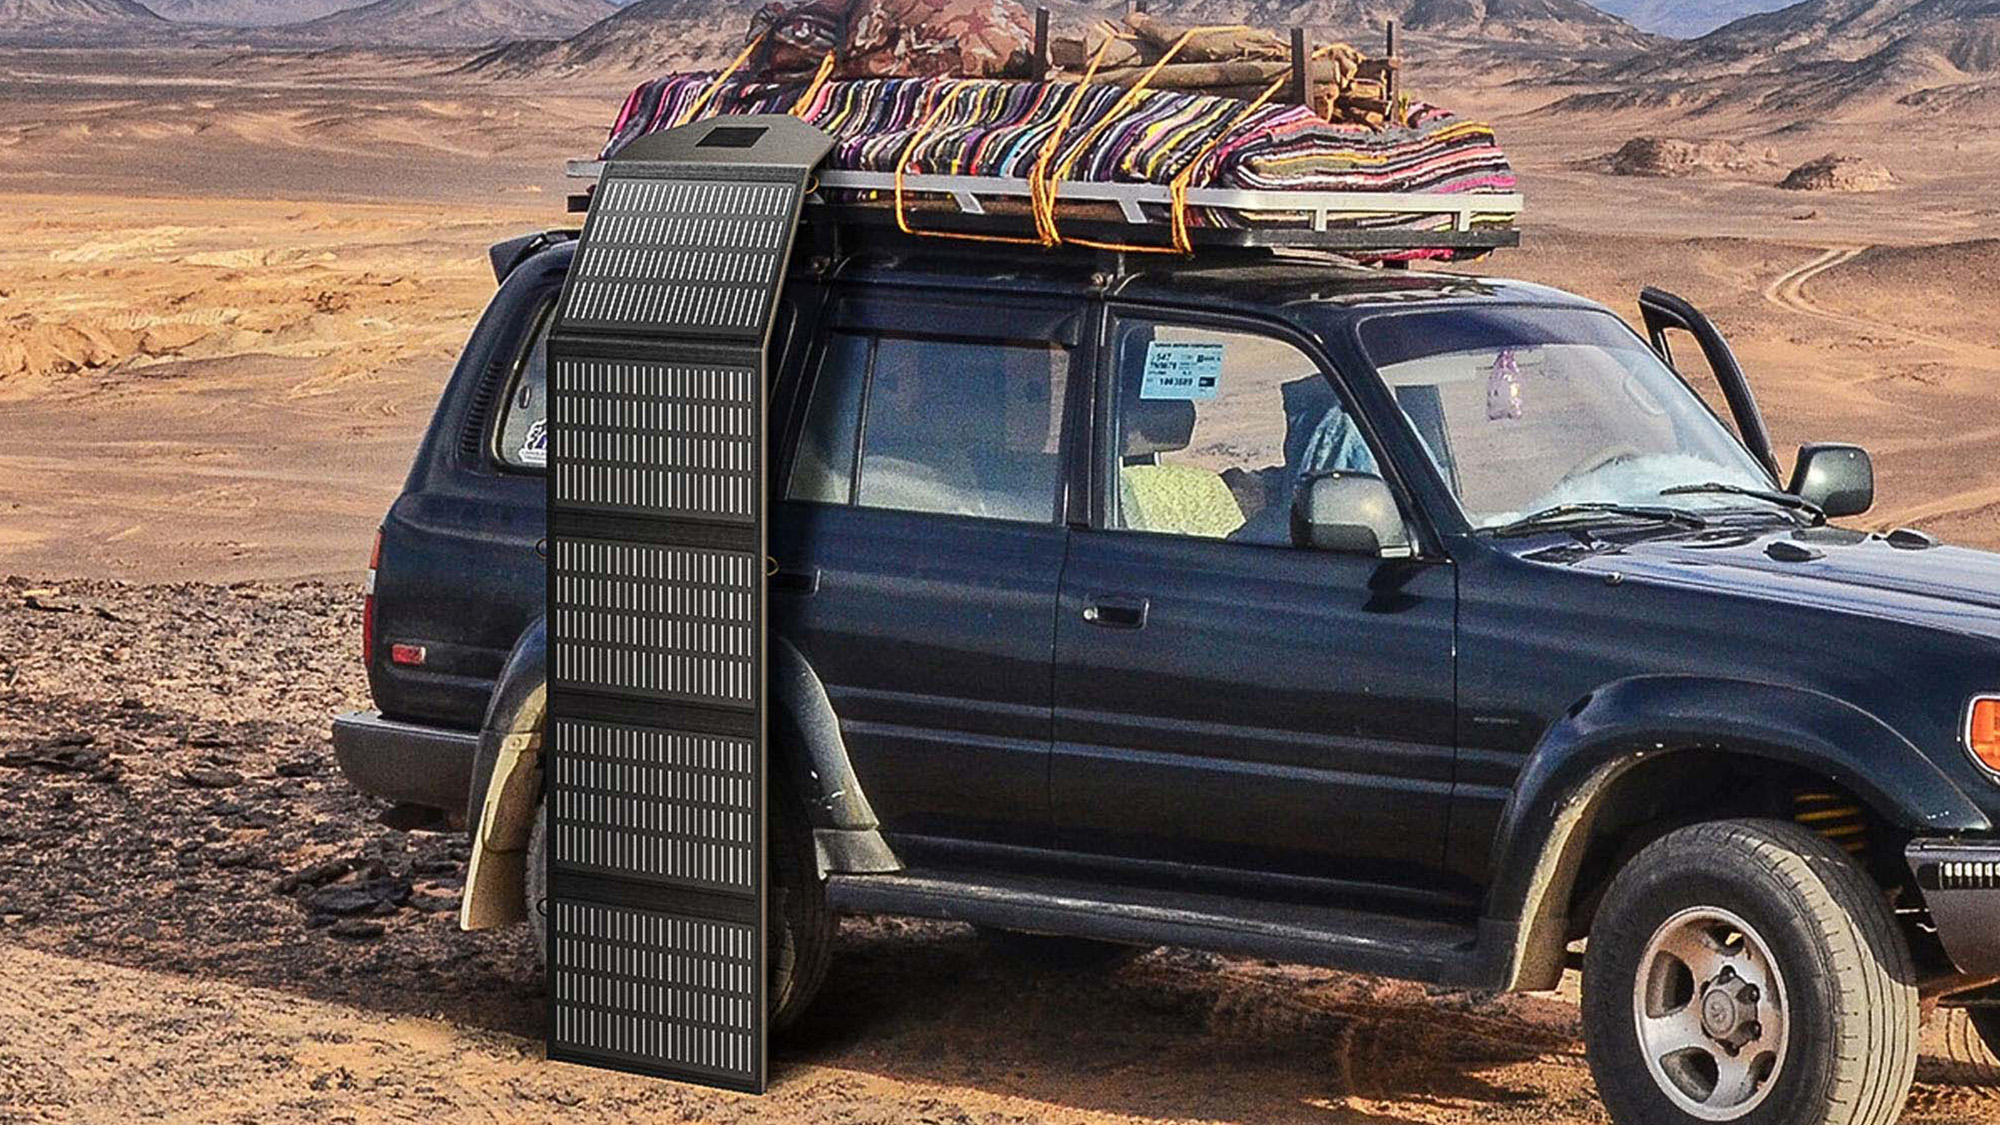 Panel słoneczny turystyczny Orico na samochodzie terenowym